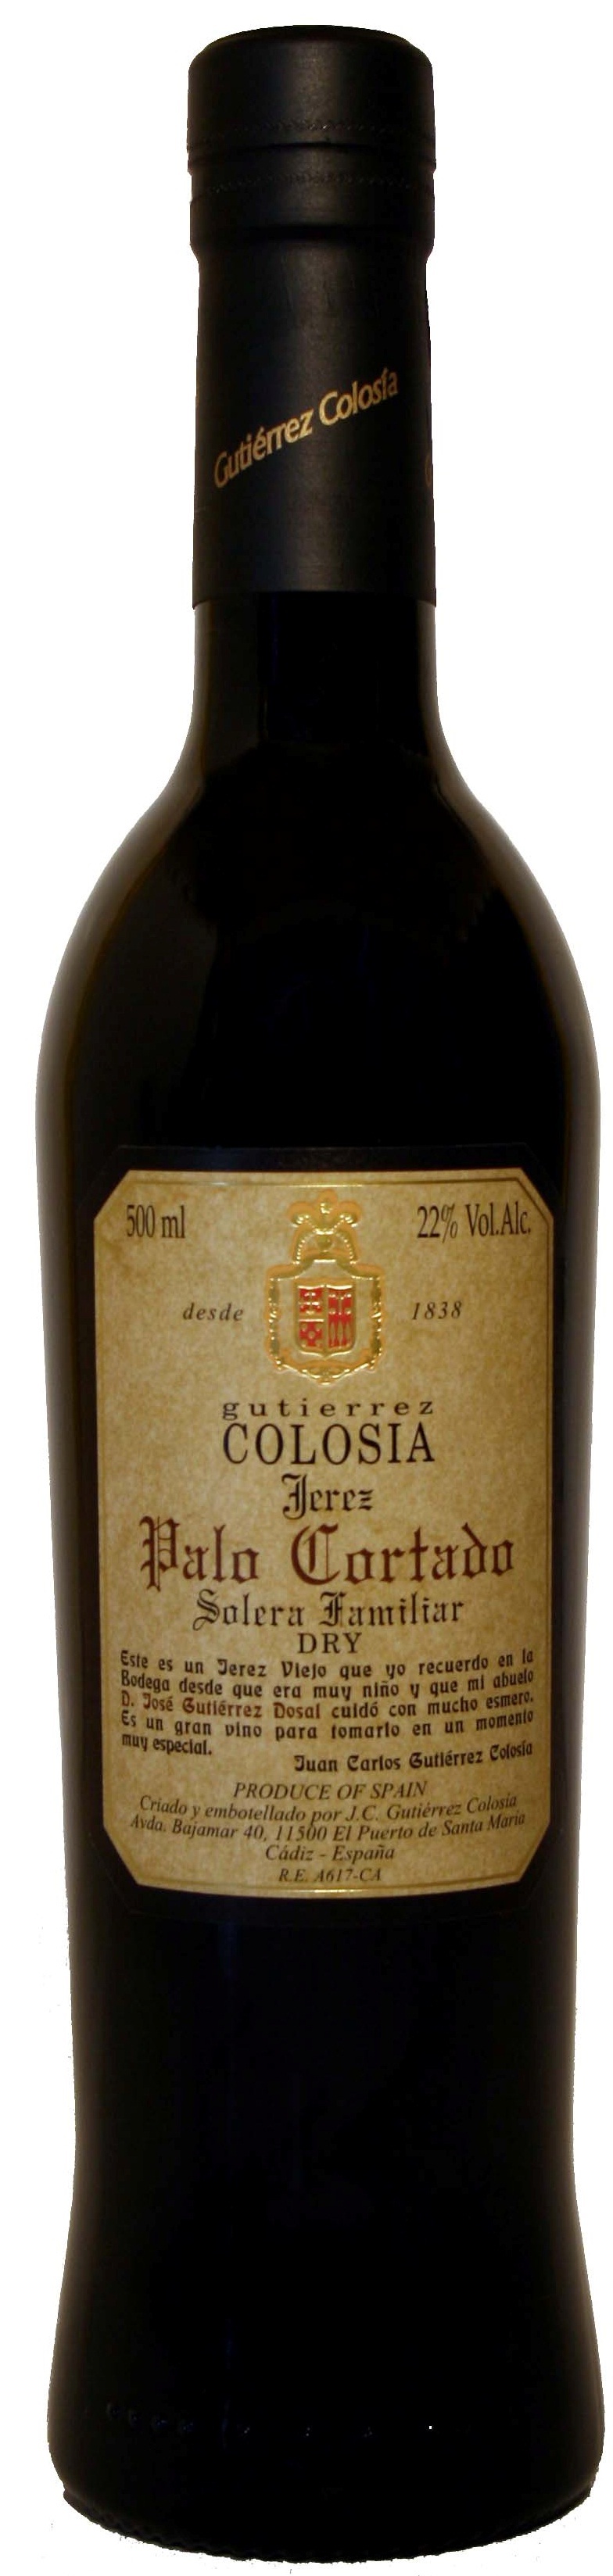 Logo Wine Colosía Solera Familiar Palo Cortado